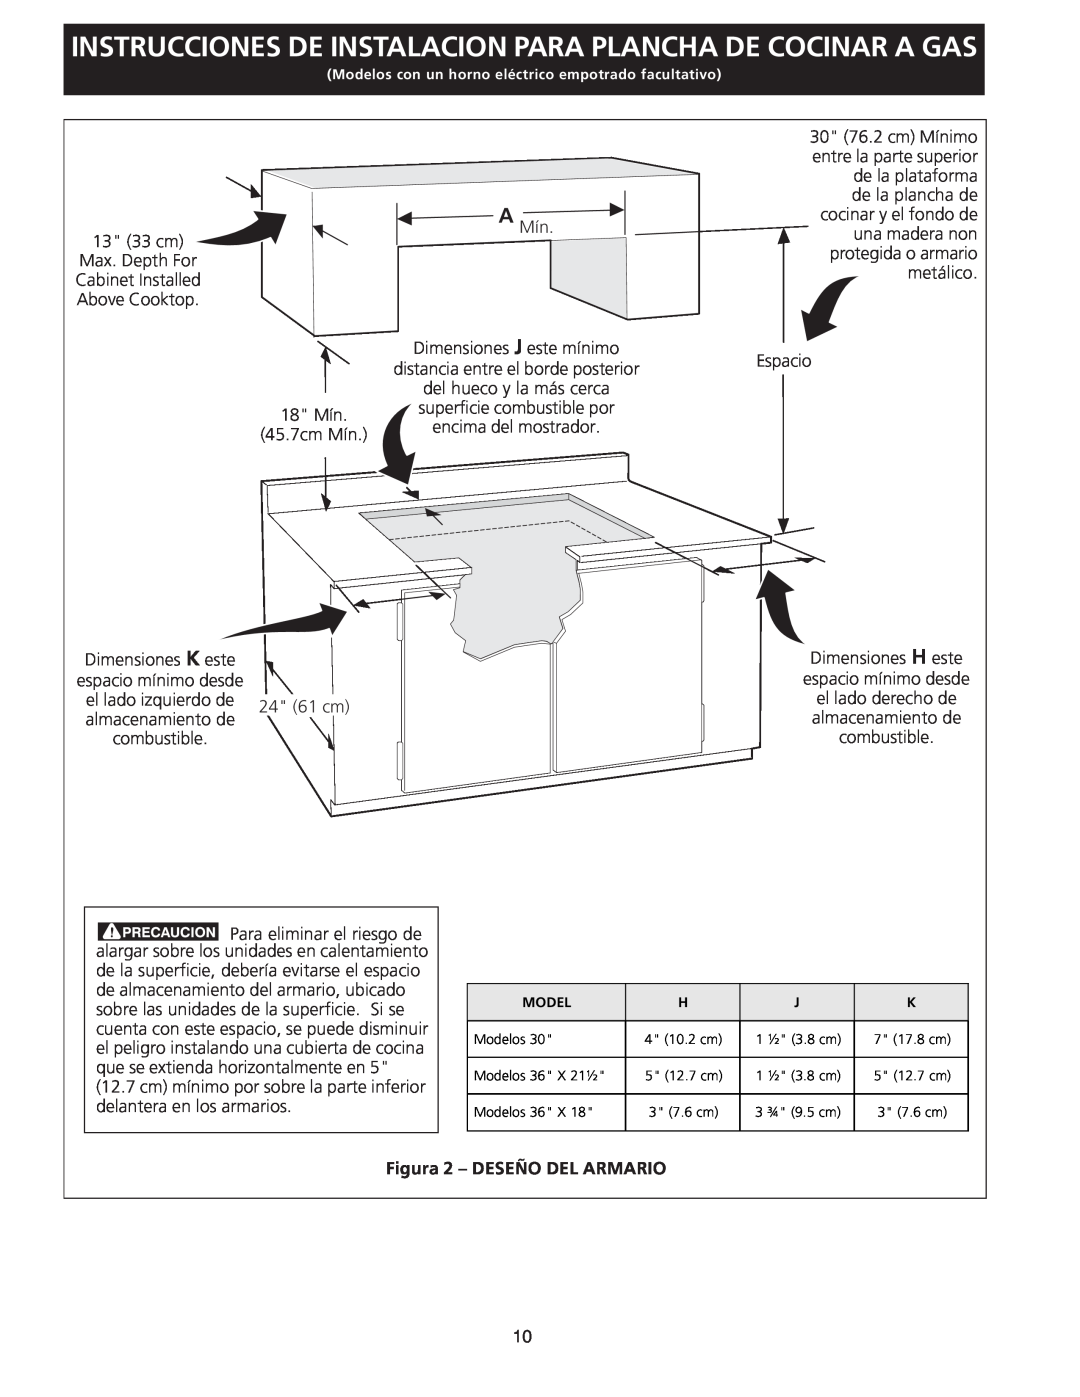 Frigidaire FGC36S5EC dimensions Instrucciones De Instalacion Para Plancha De Cocinar A Gas, Figura 2 - DESEÑO DEL ARMARIO 